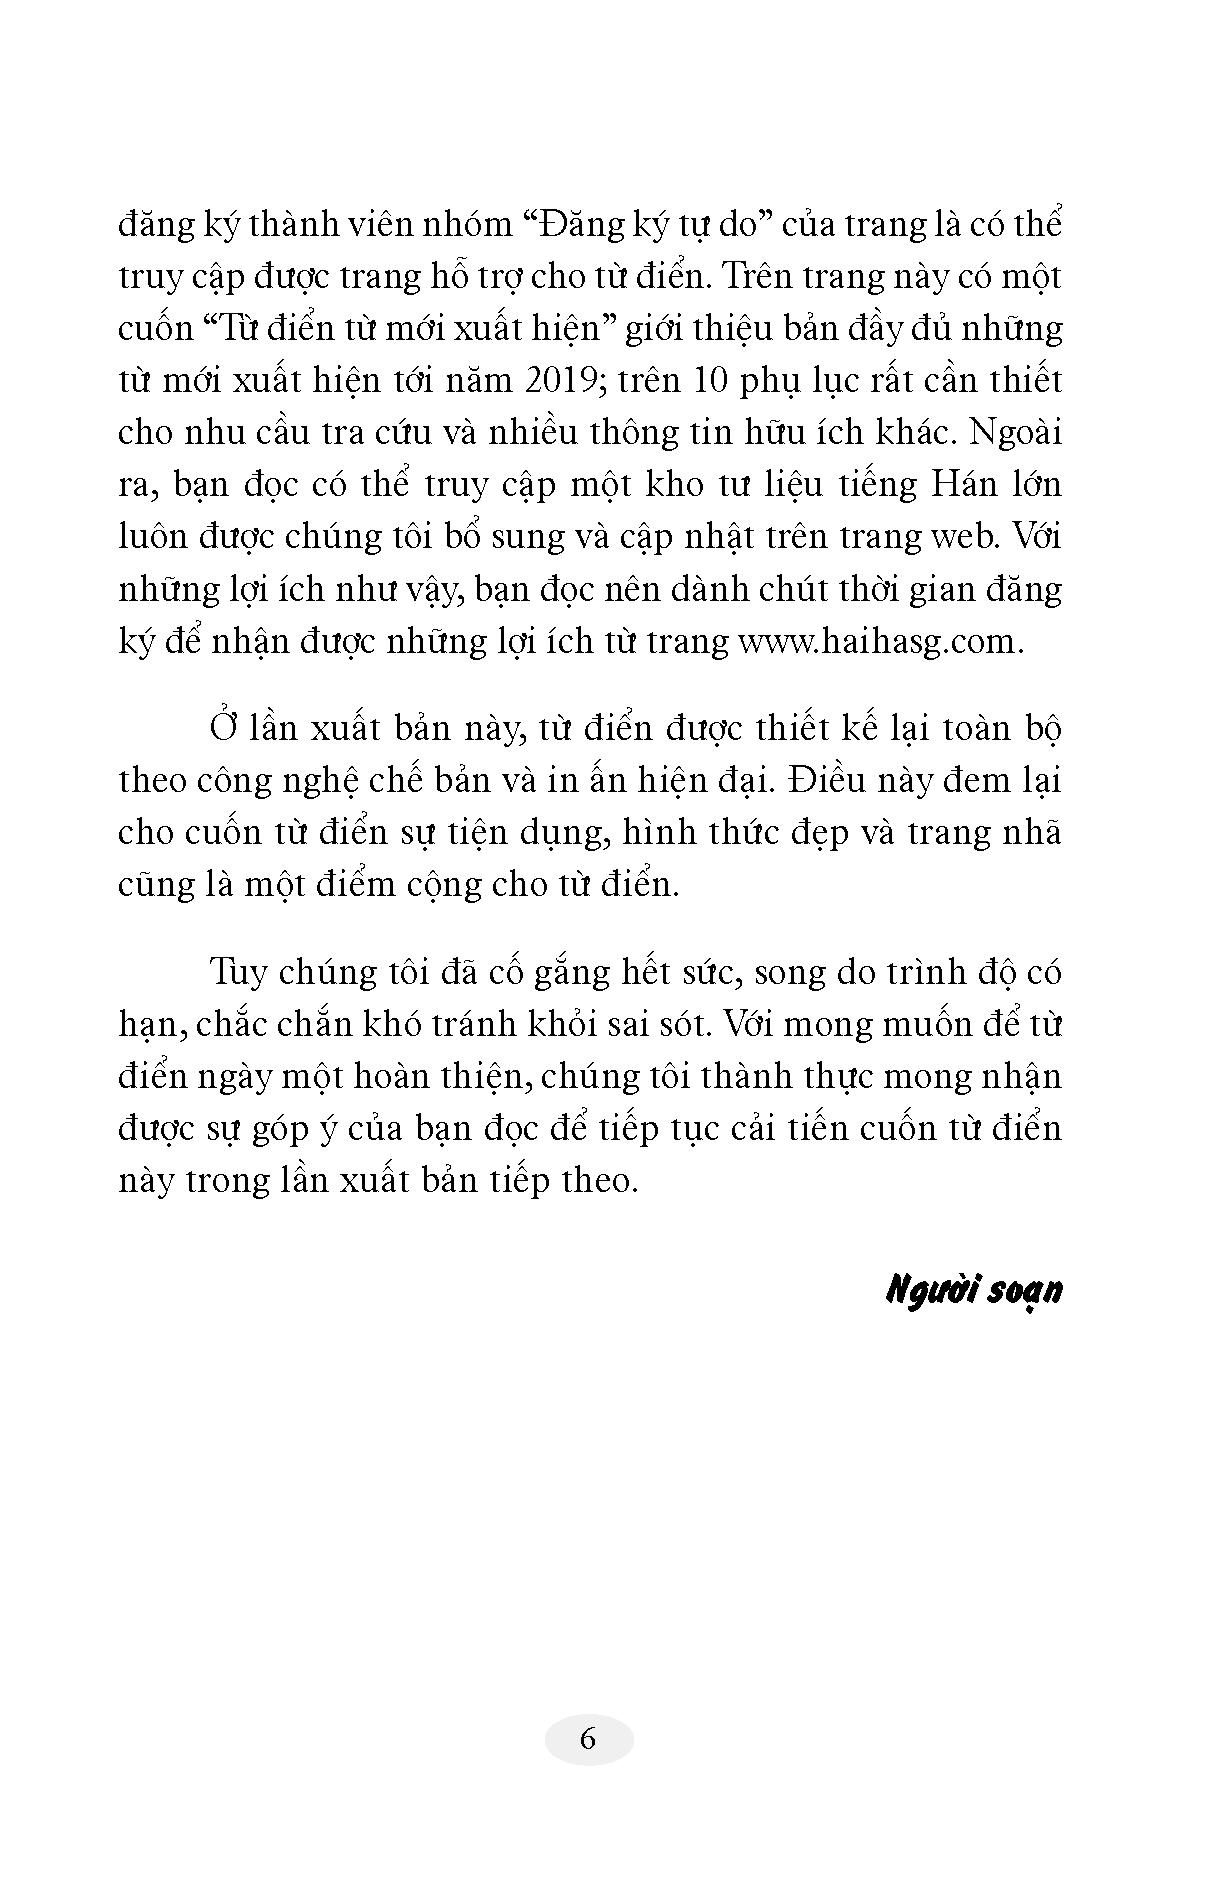 Từ Điển Hán Việt Hiện Đại - Bỏ Túi -Hải Hà SG